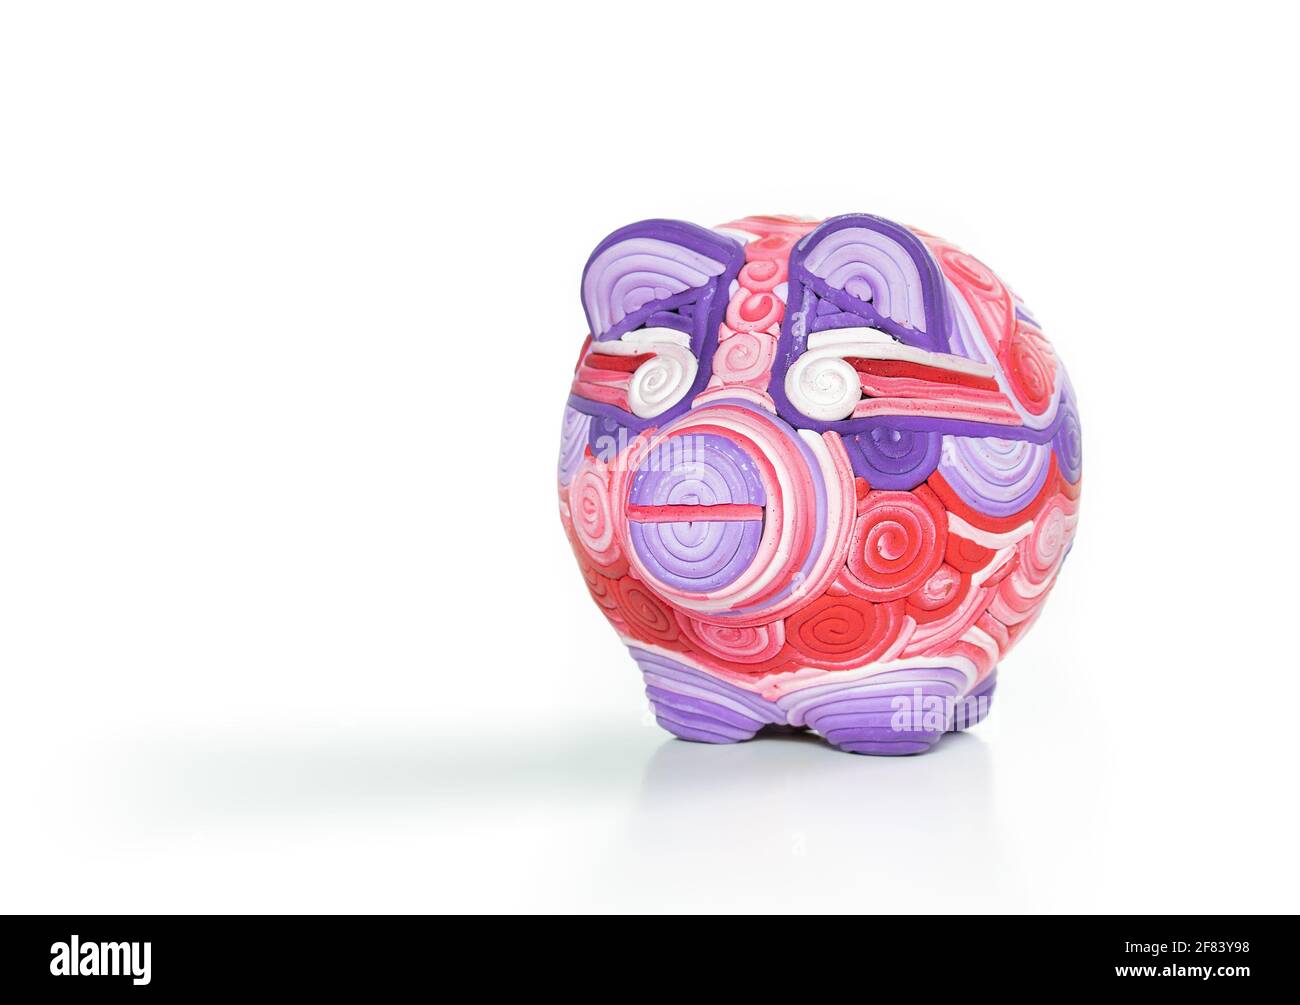 Único banco de piggy, banco de peniques o caja de dinero. Adorable escultura artesanal de cerdo hecha de arcilla con remolinos y líneas de color blanco, rosa violeta y rojo. Foto de stock